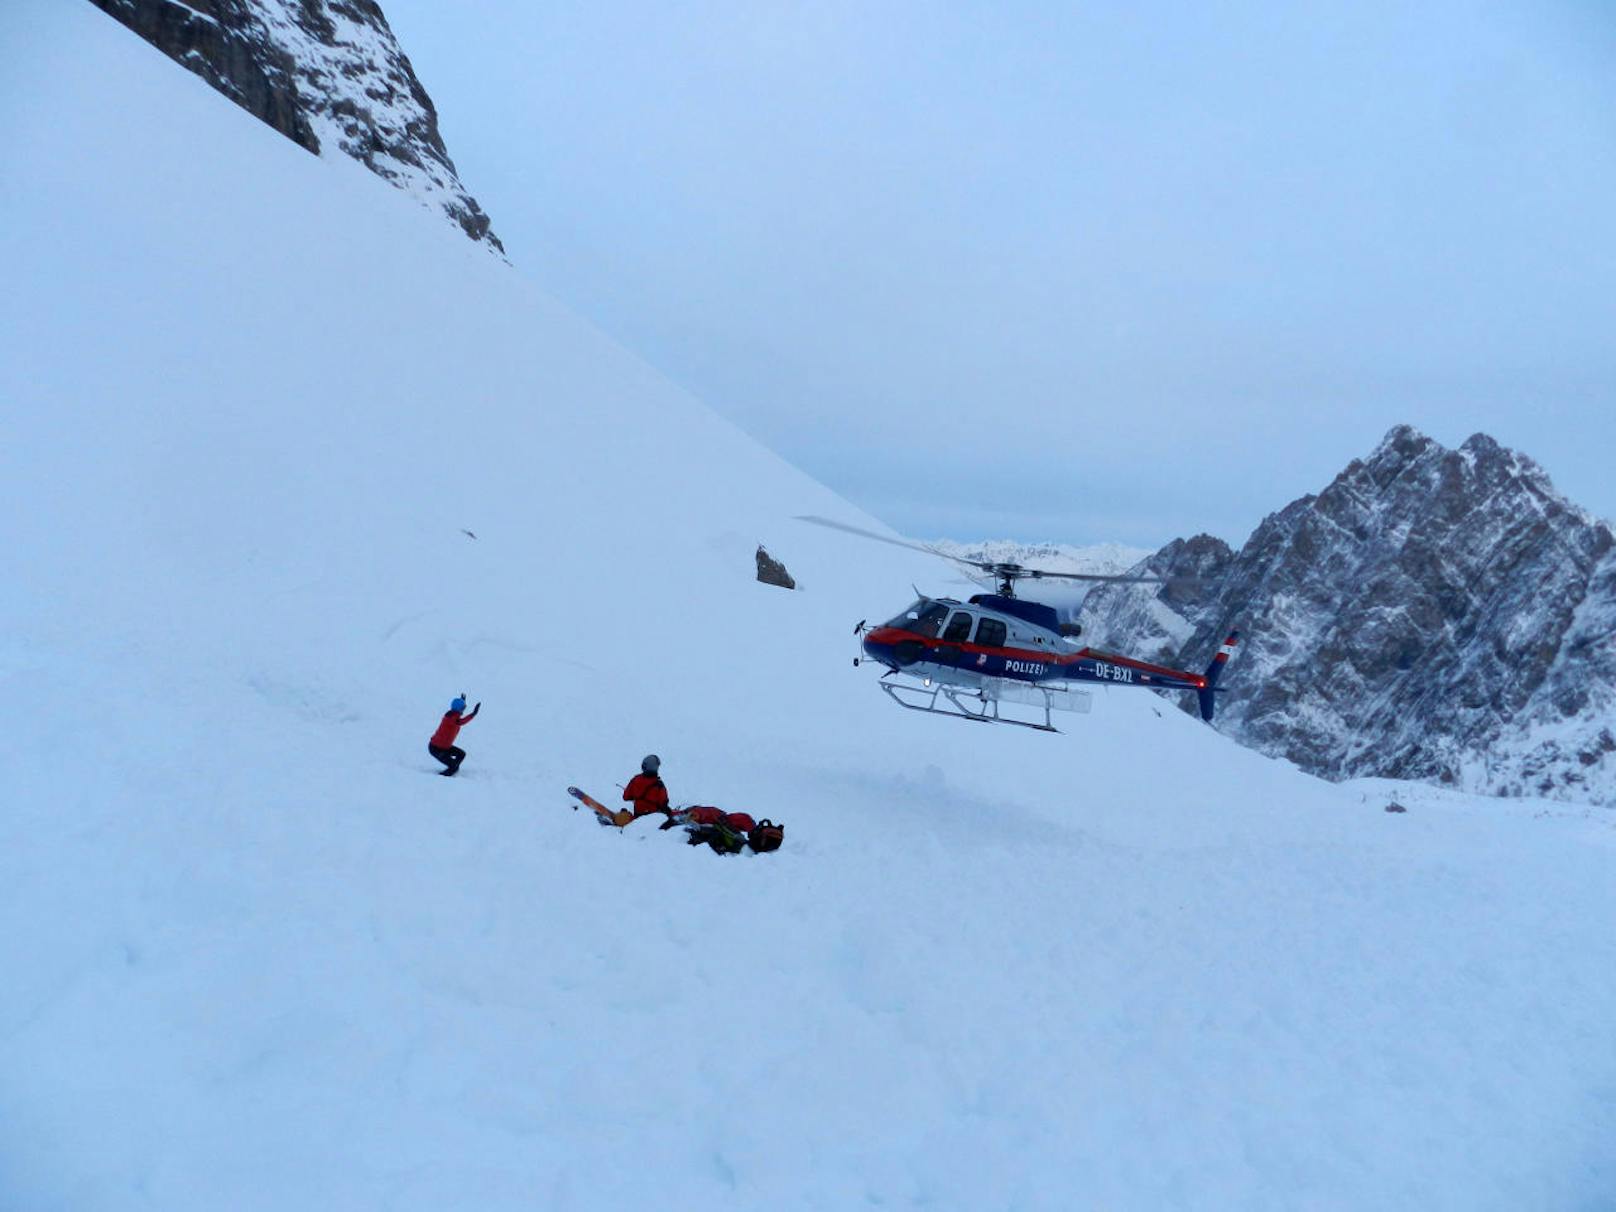 Für einen der beiden Skitourengeher, einen 67-jährigen Osttiroler, kam jede Hilfe zu spät.